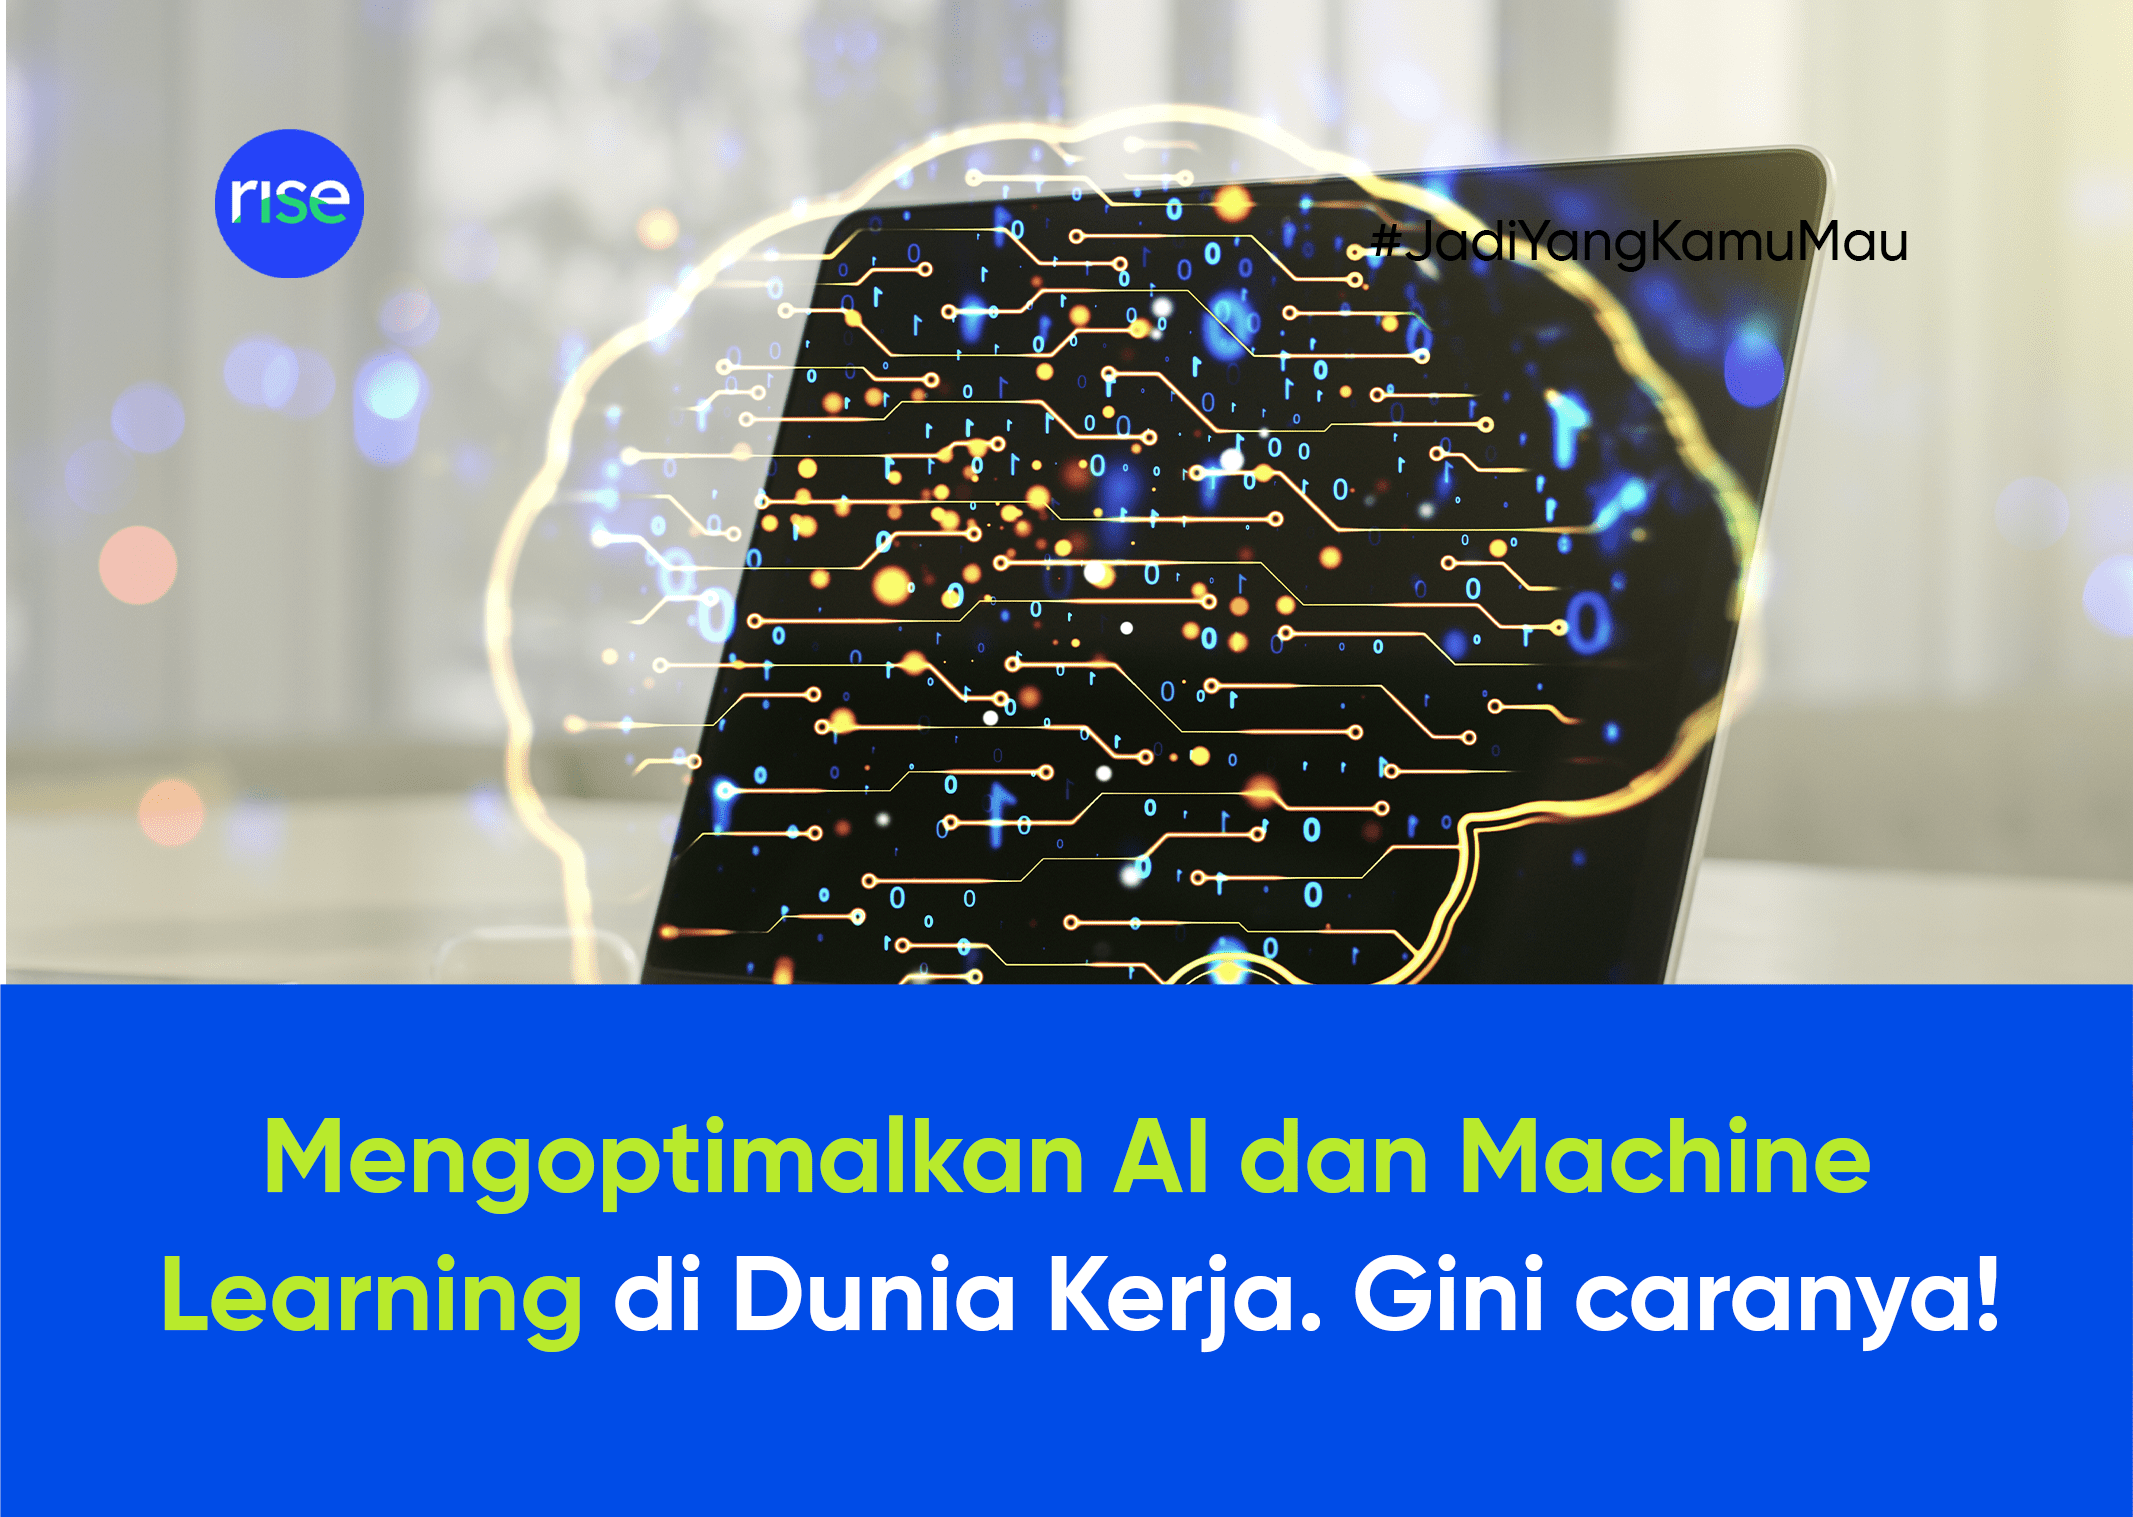 Bagaimana Cara Mengoptimalkan AI dan Machine Learning di Dunia Kerja?